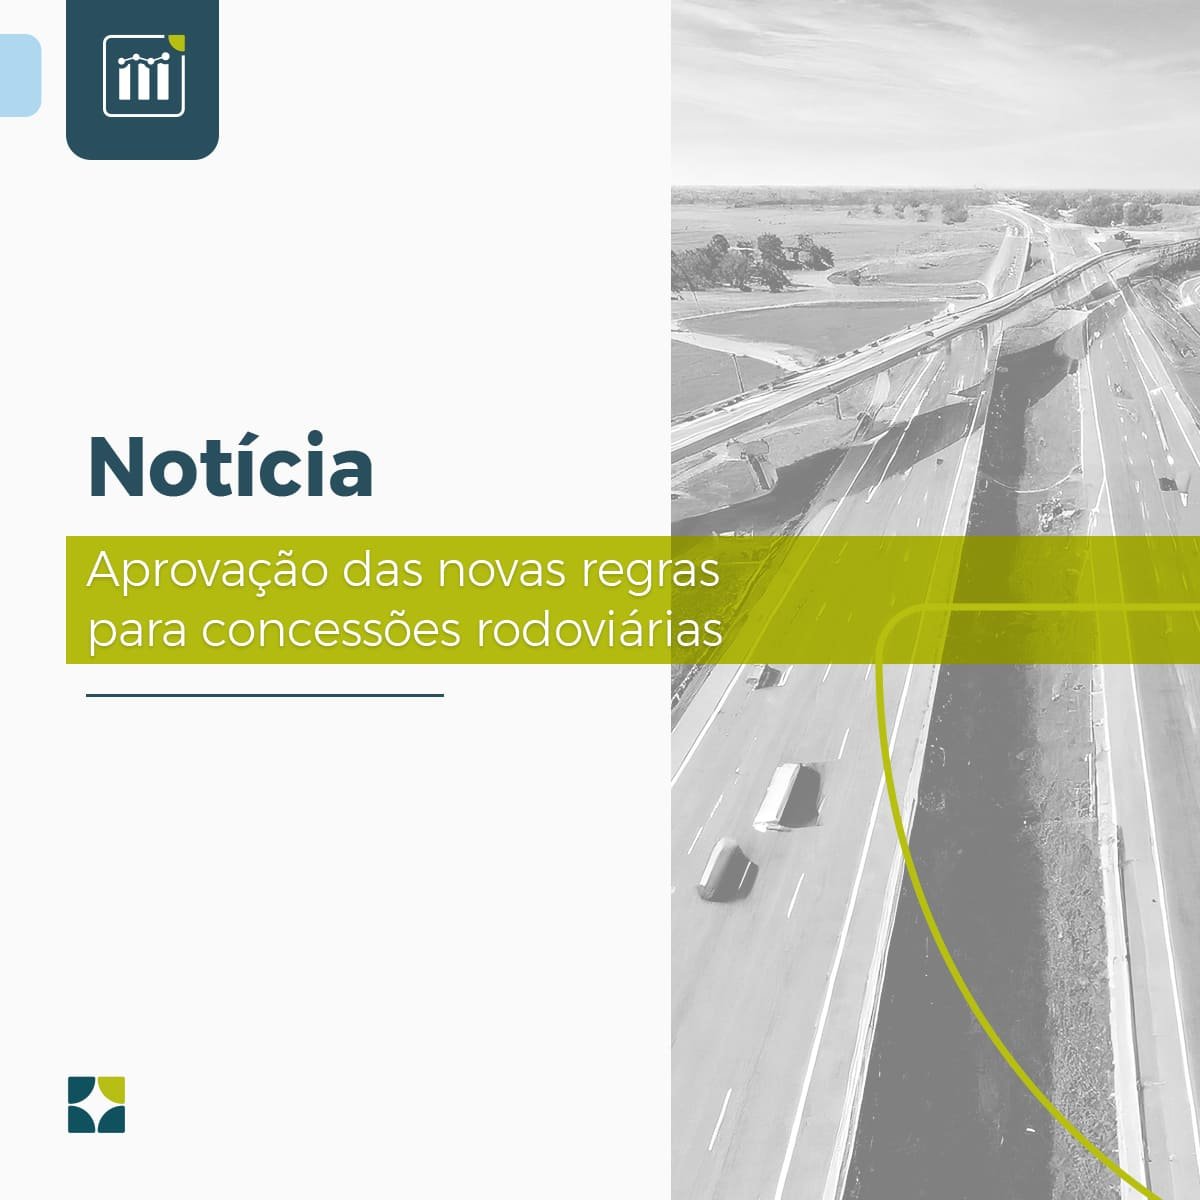 Aprovação das novas regras para concessões rodoviárias